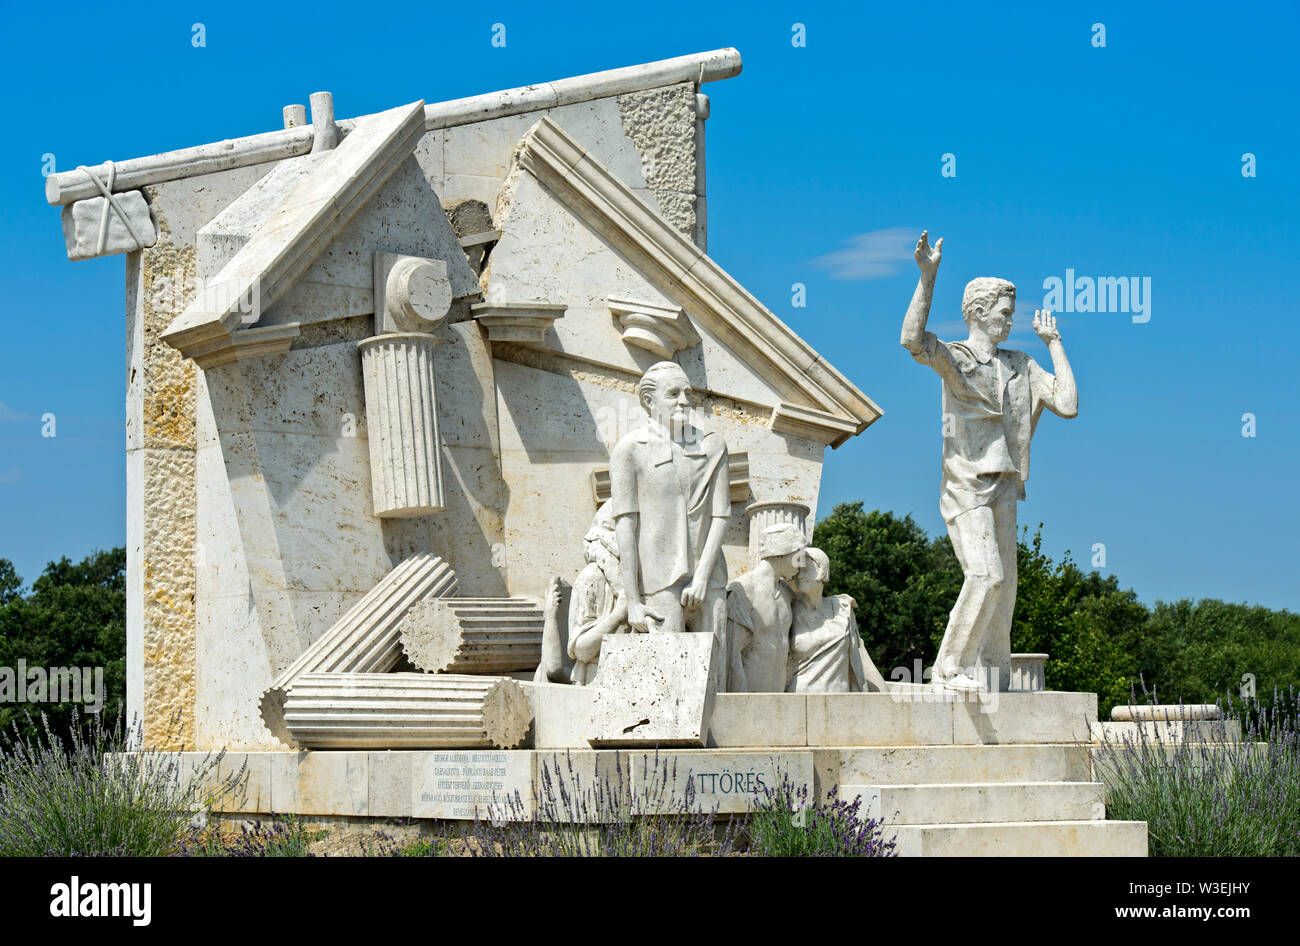 La svolta - monumento europeo di libertà di Miklos Melocco, picnic paneuropeo Memorial Park, Fertörakos, Ungheria Foto Stock